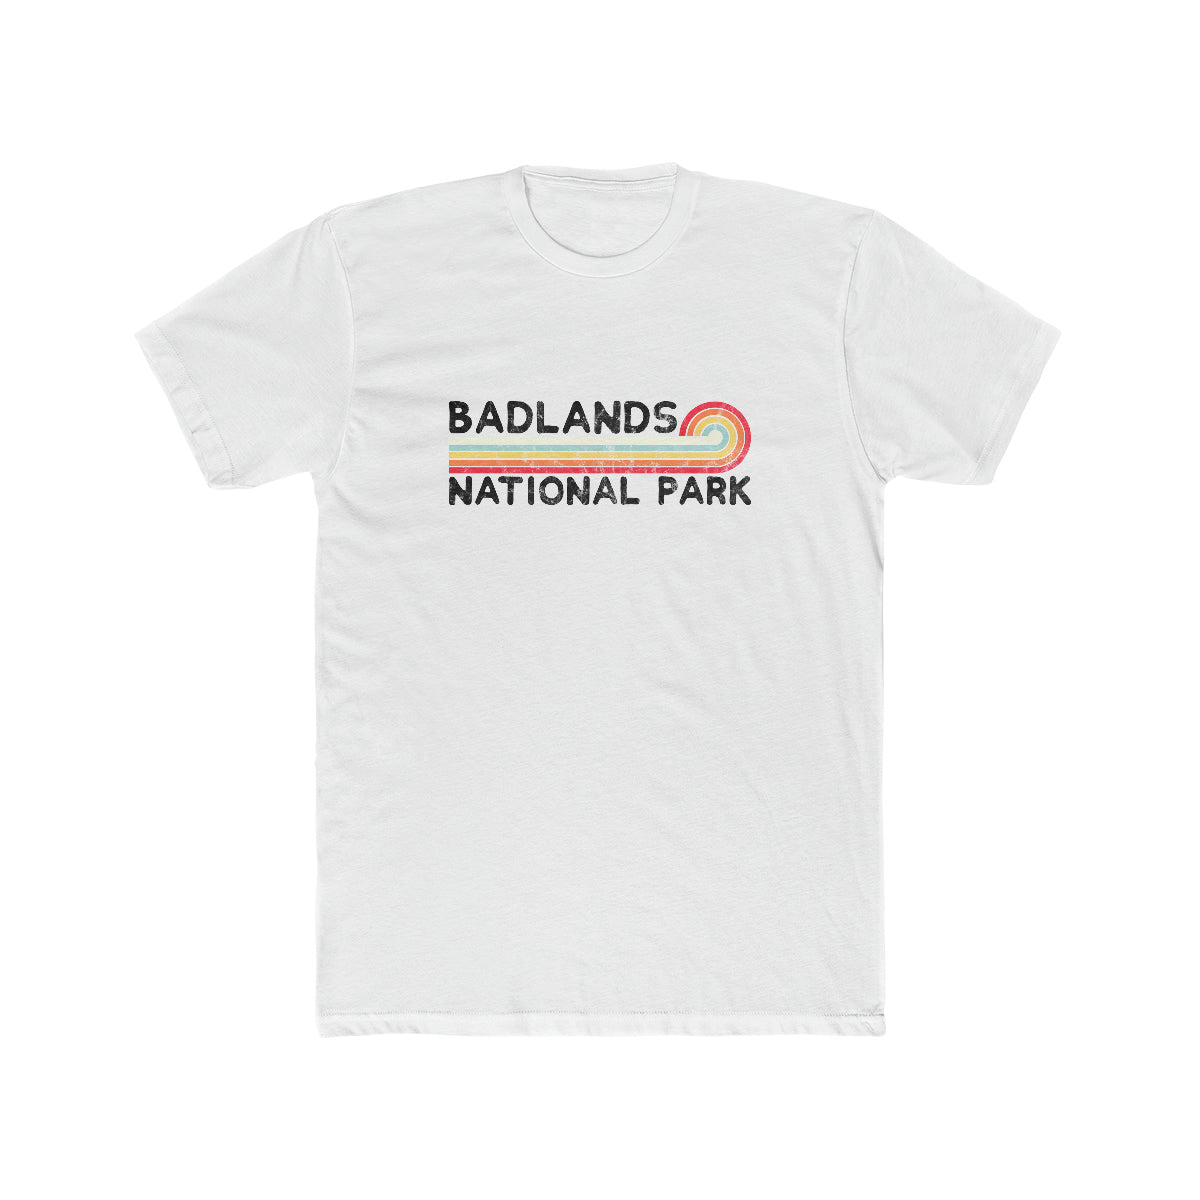 Badlands National Park T-Shirt - Vintage Stretched Sunrise